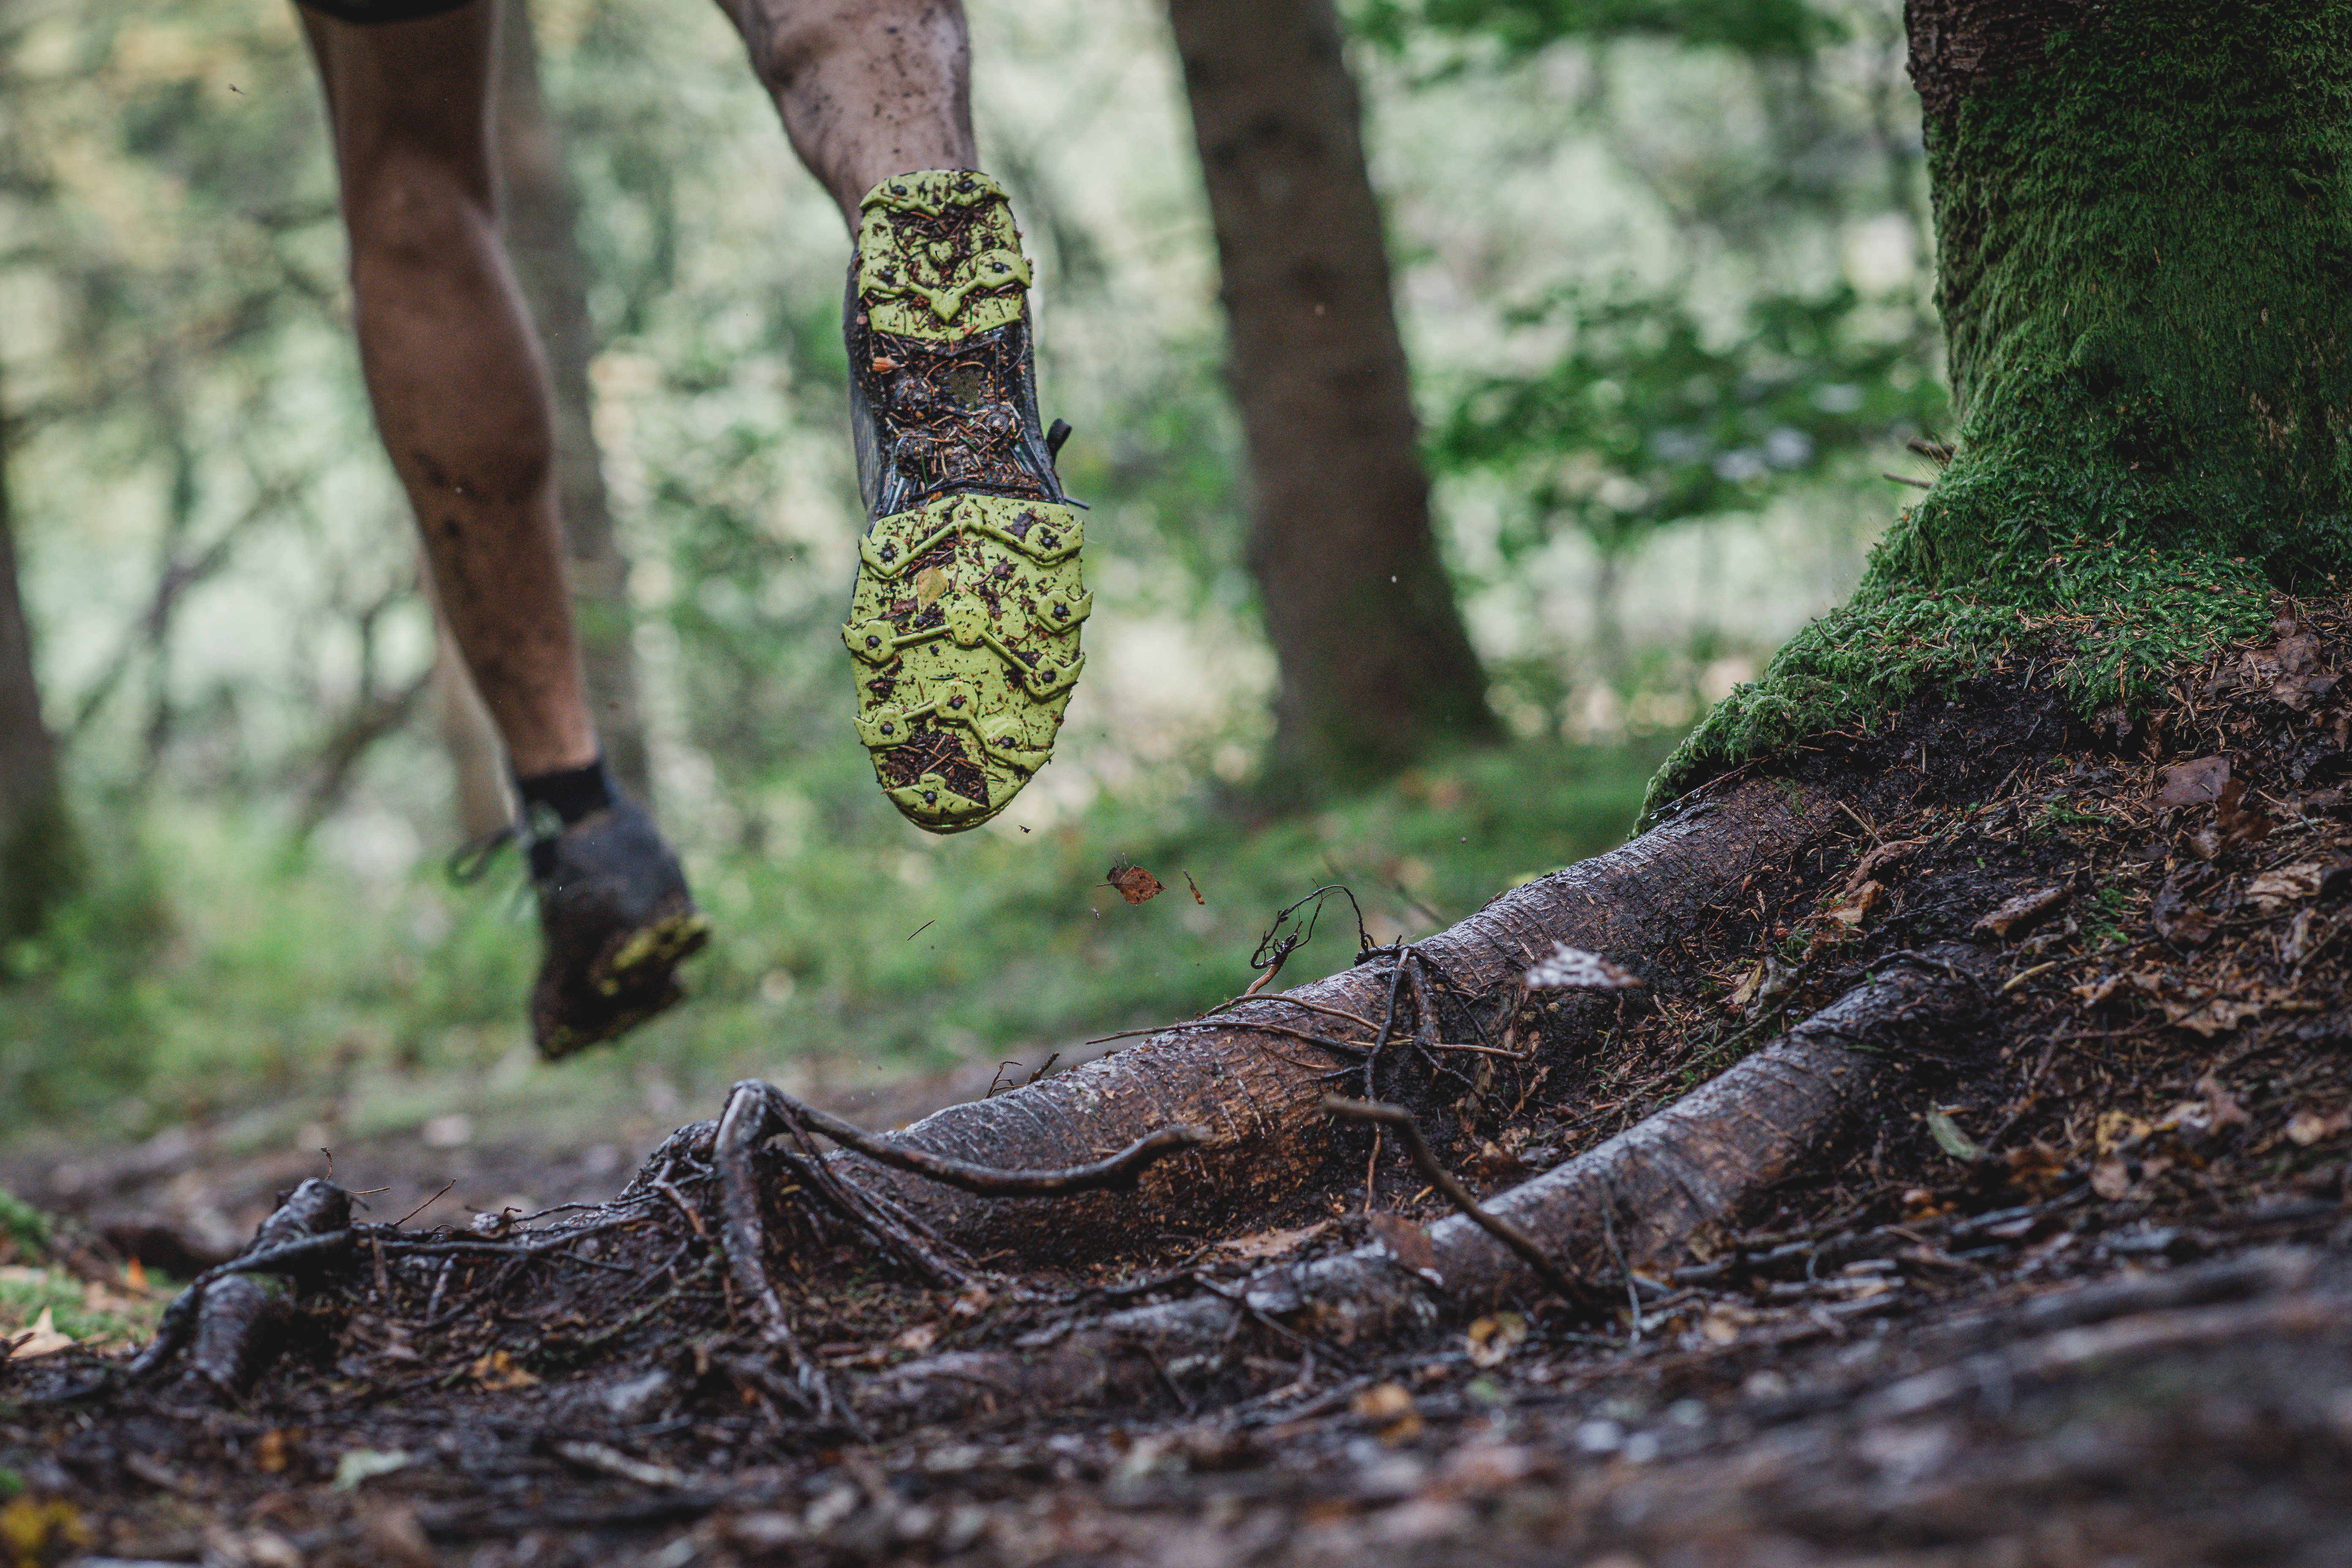 Correr por senderos atravesados por raíces de árboles significa un desafío mucho mayor para el cerebro que el recorrido sobre superficies planas. Foto Prensa Libre: Icebug/dpa 